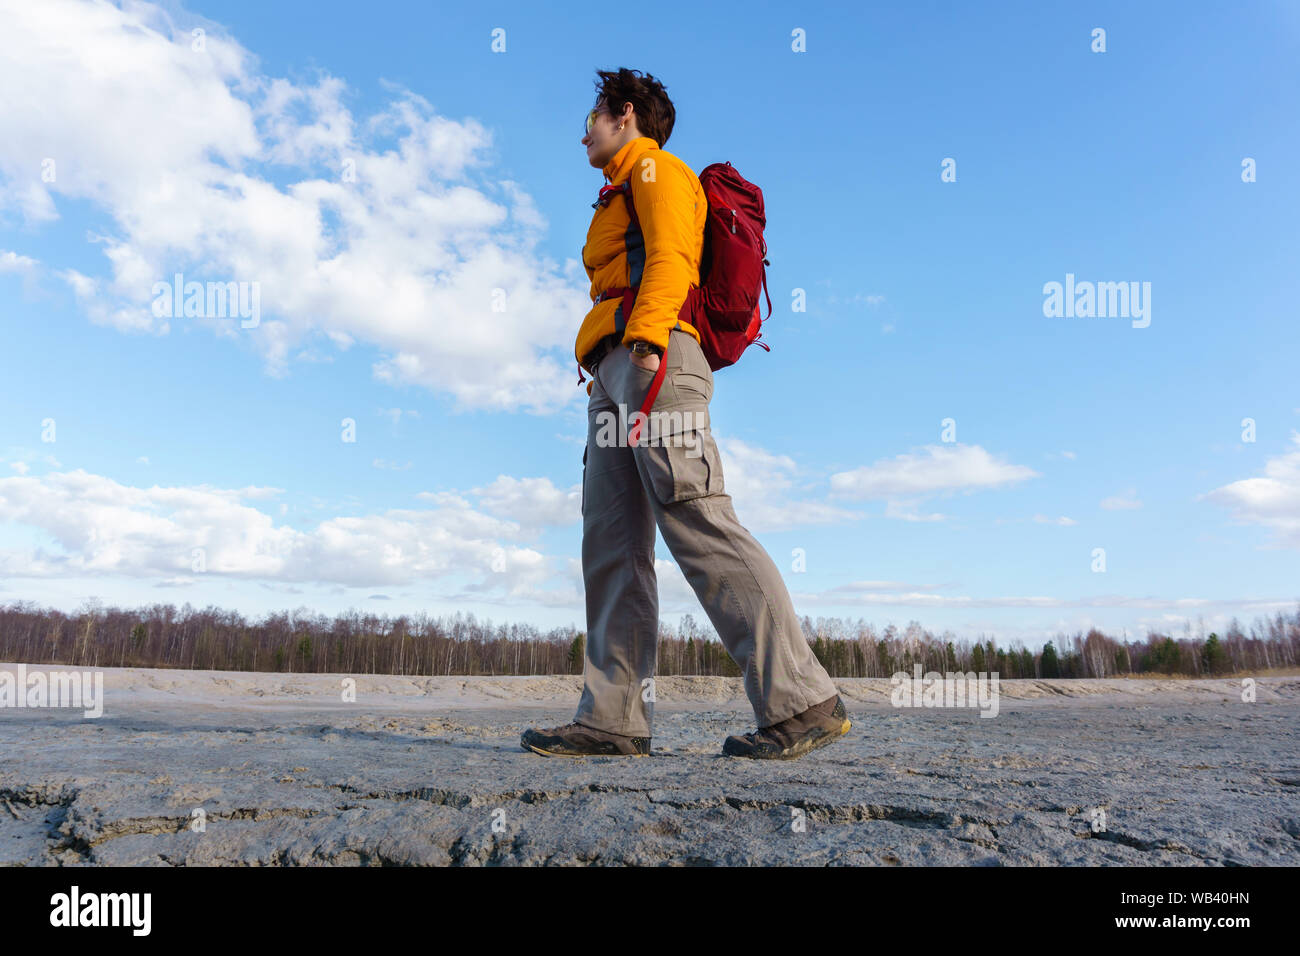 Donna traveler camminando in una zona desertica con la foresta di primavera all'orizzonte sotto un cielo blu con nuvole Foto Stock